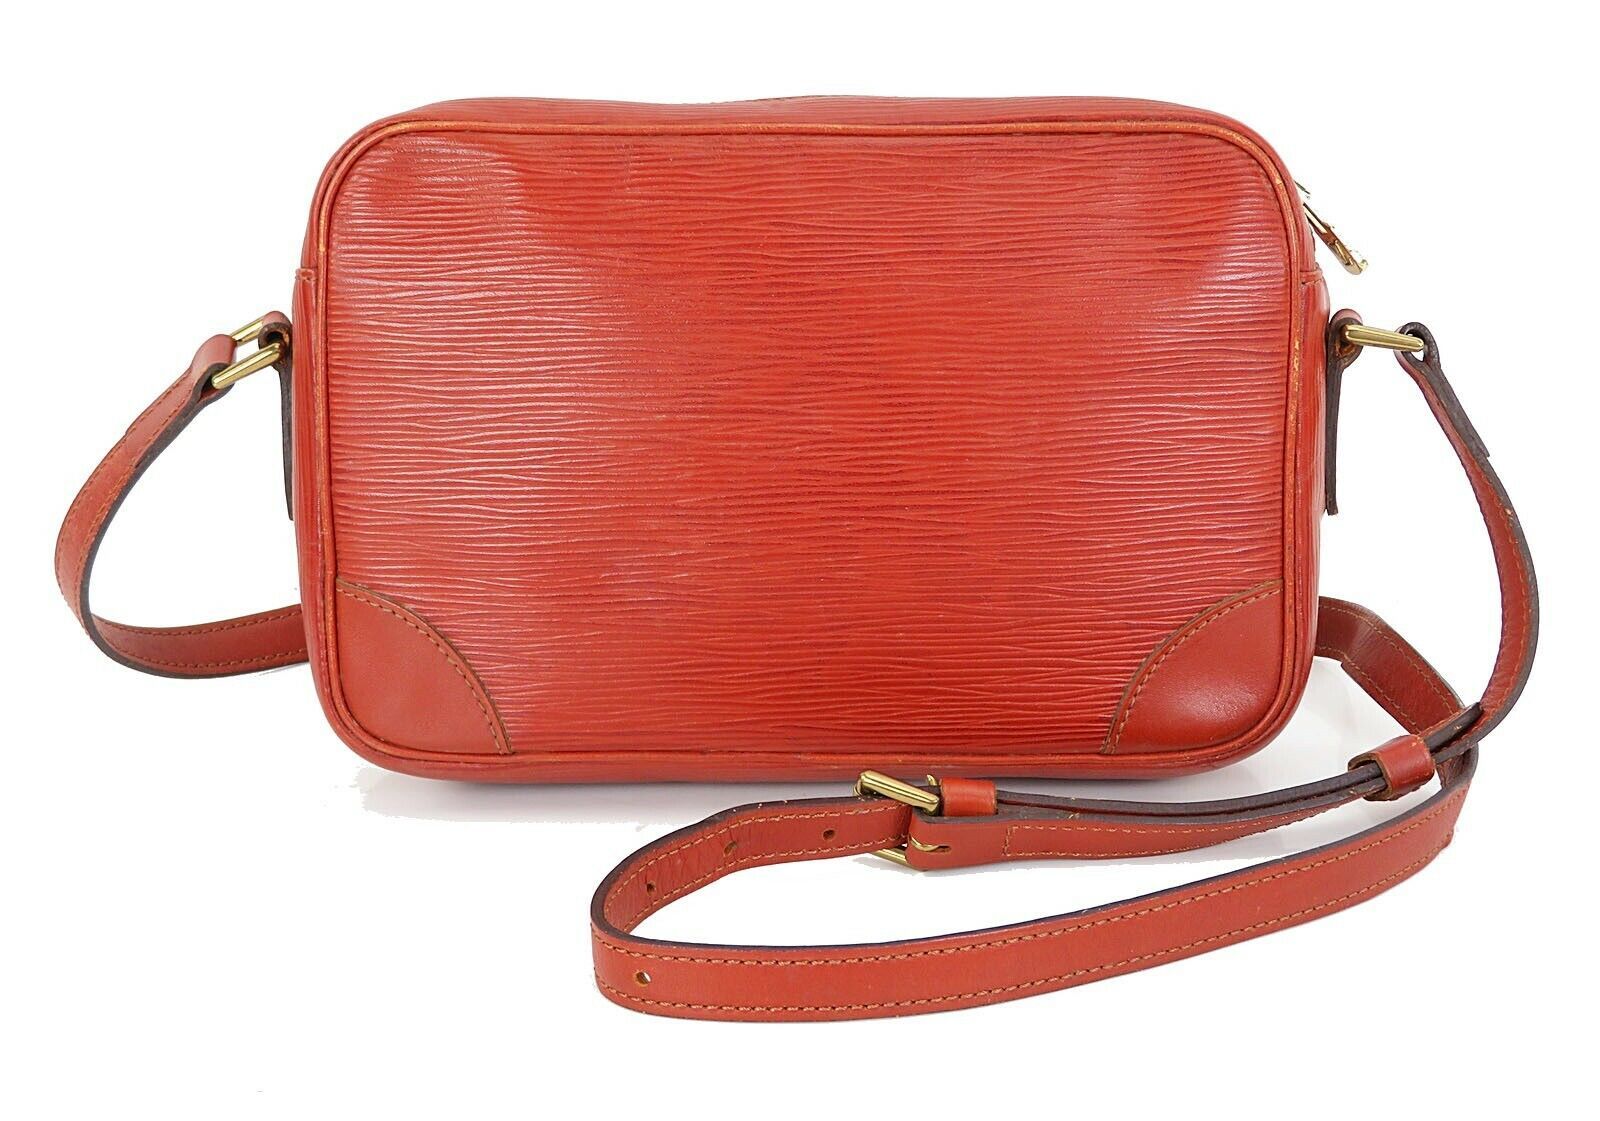 Authentic LOUIS VUITTON Trocadero 24 Brown Epi Leather Shoulder Bag #21850 - Women&#39;s Handbags & Bags